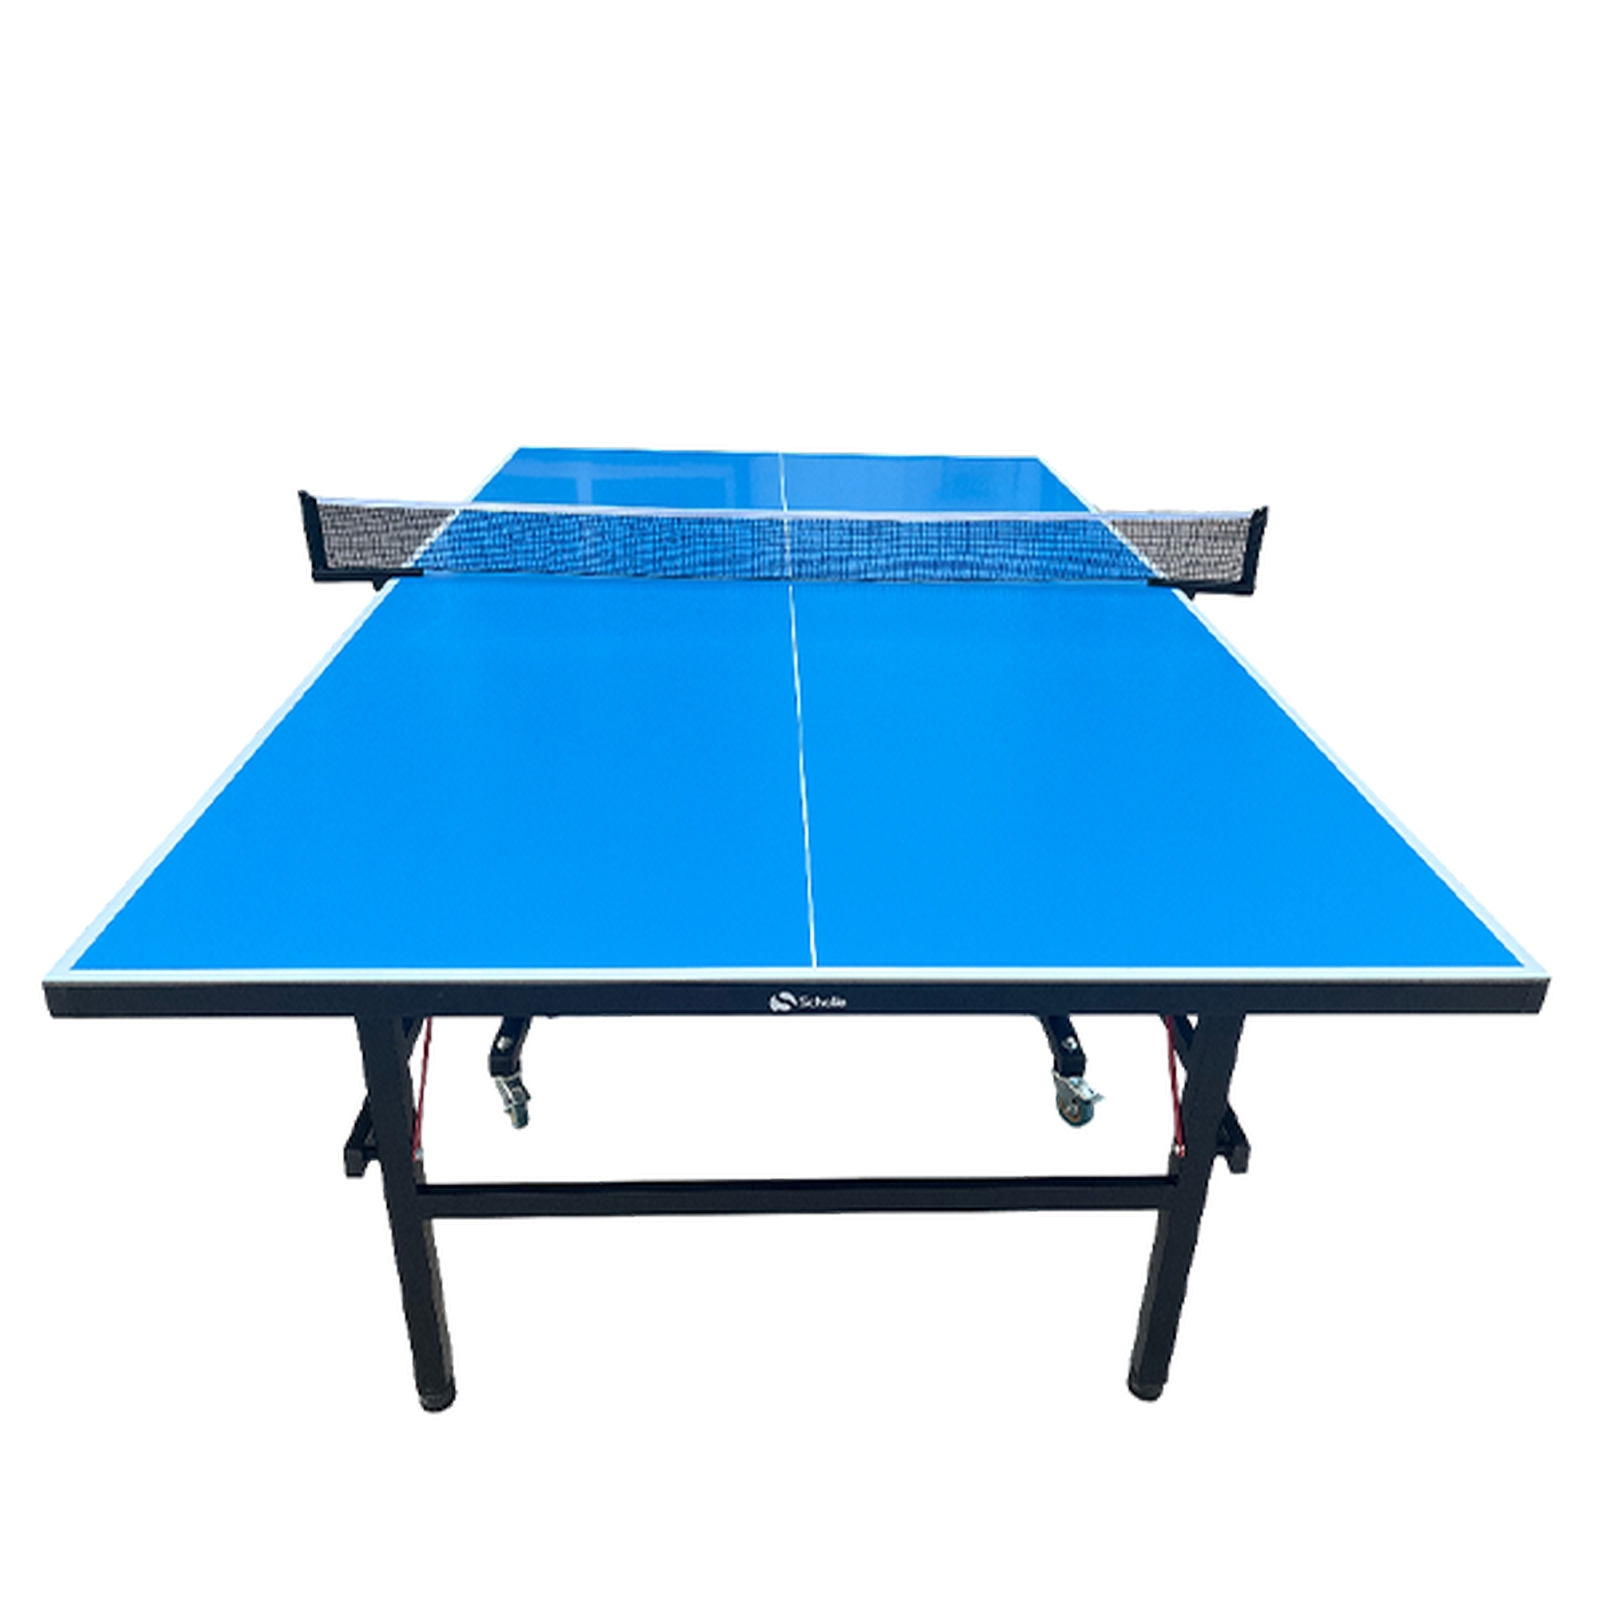 Теннисный стол Scholle TT750 Outdoor 1600_1600